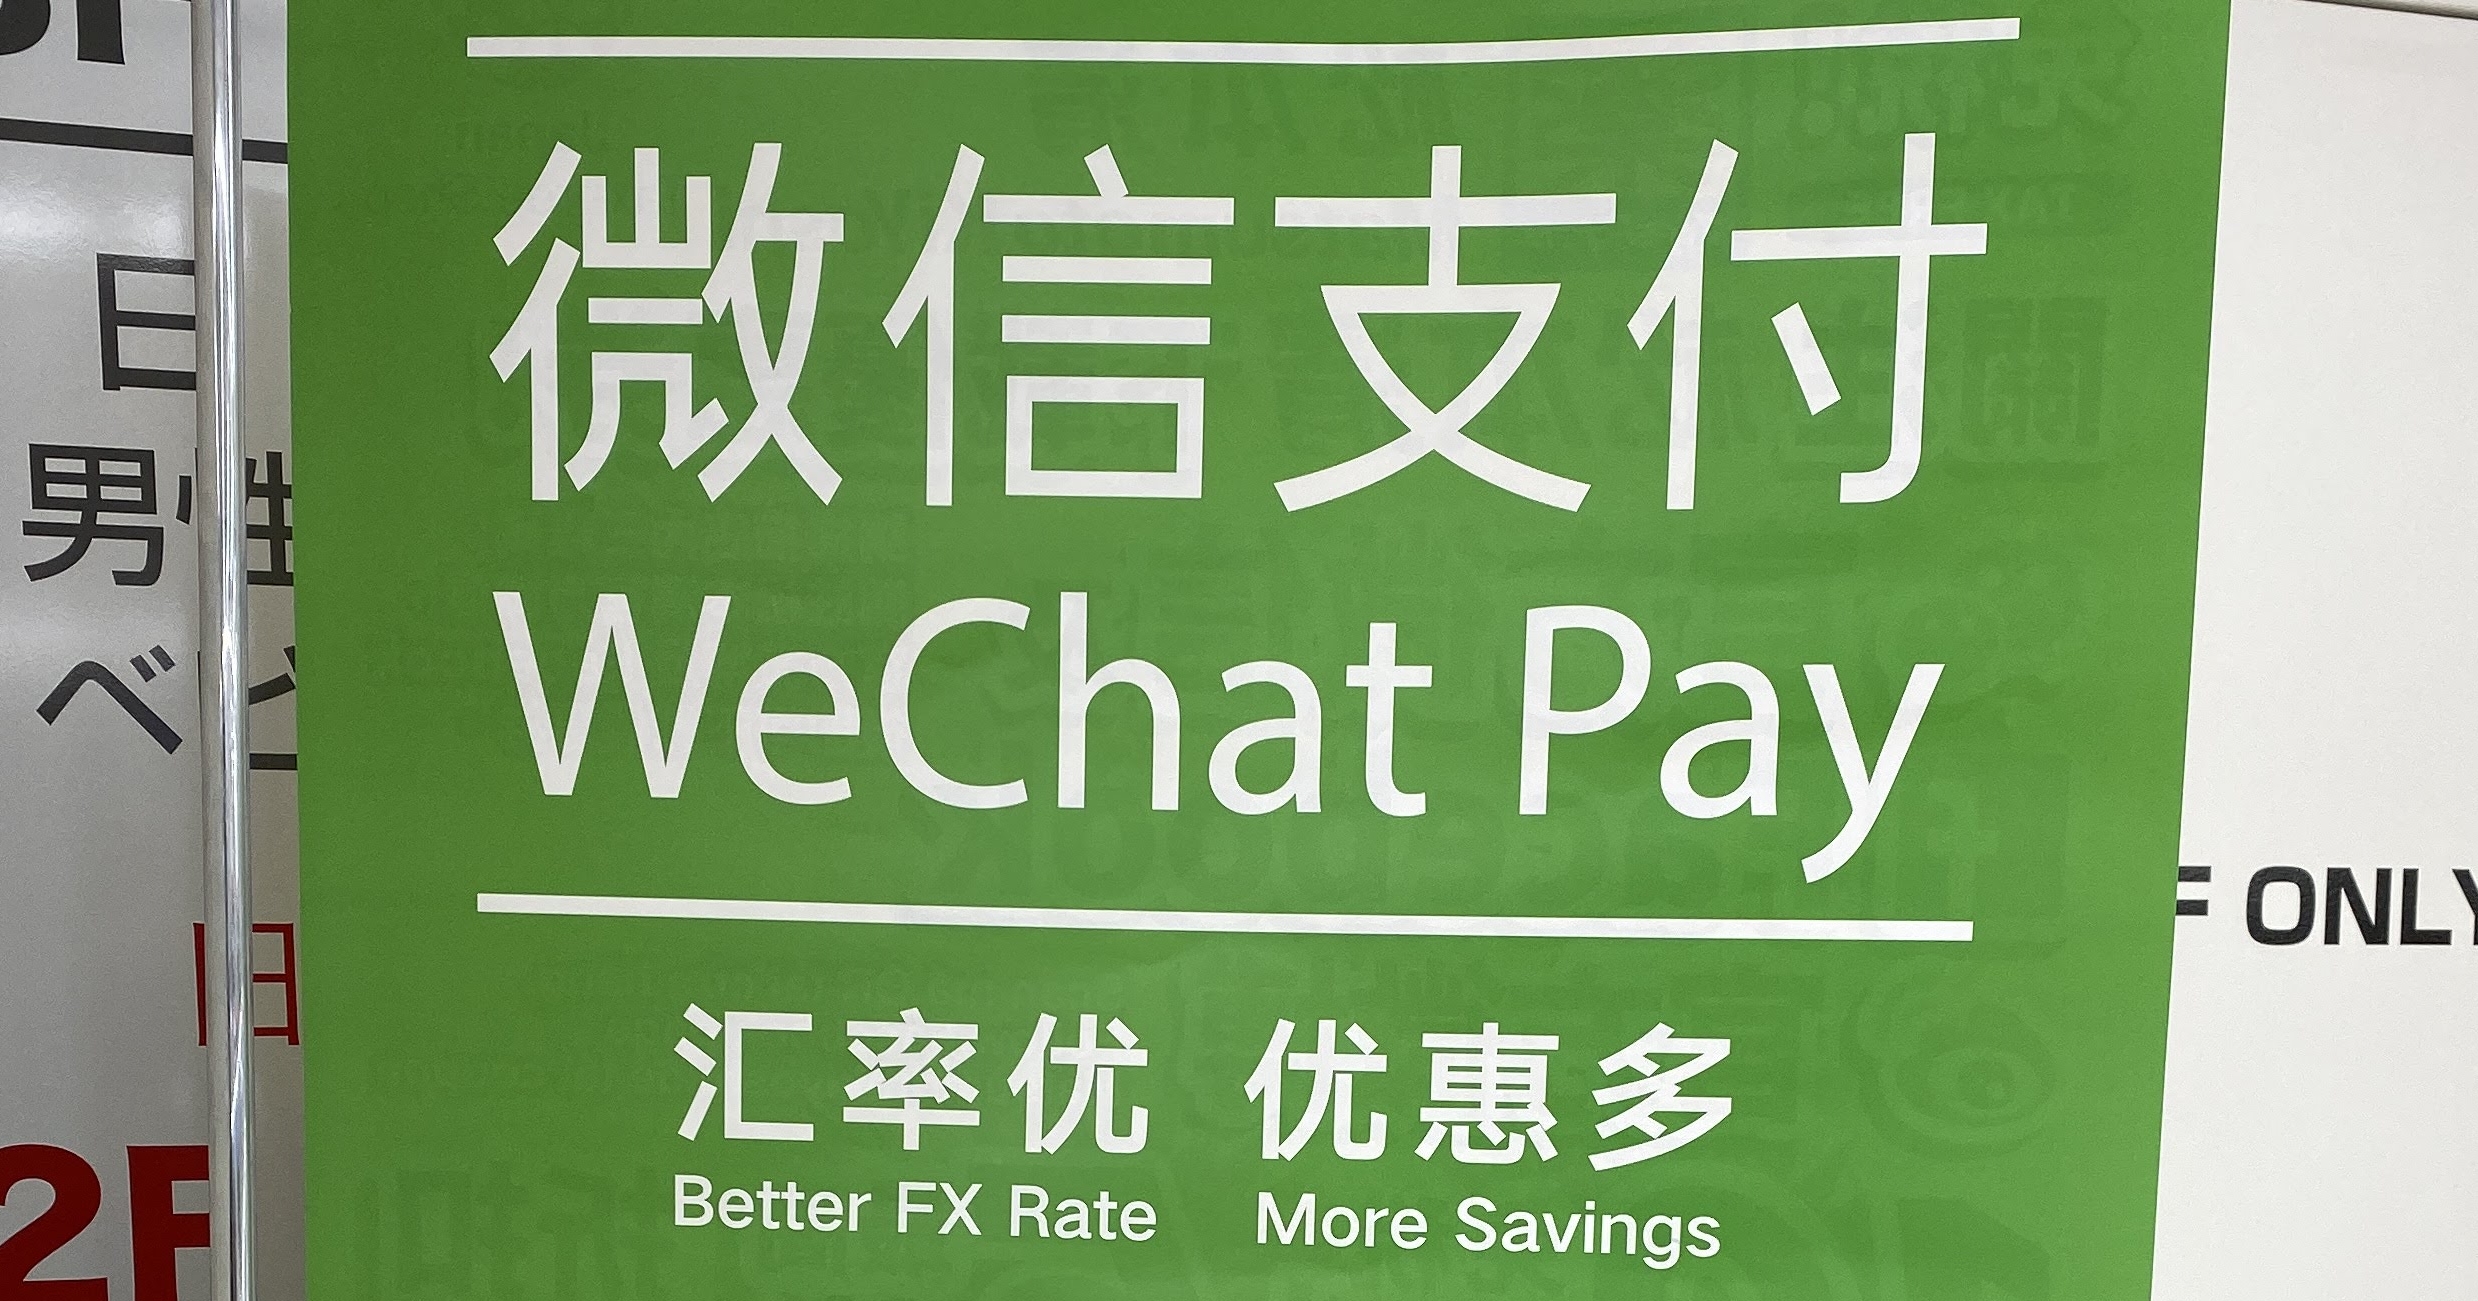 alt="WeChat Pay"